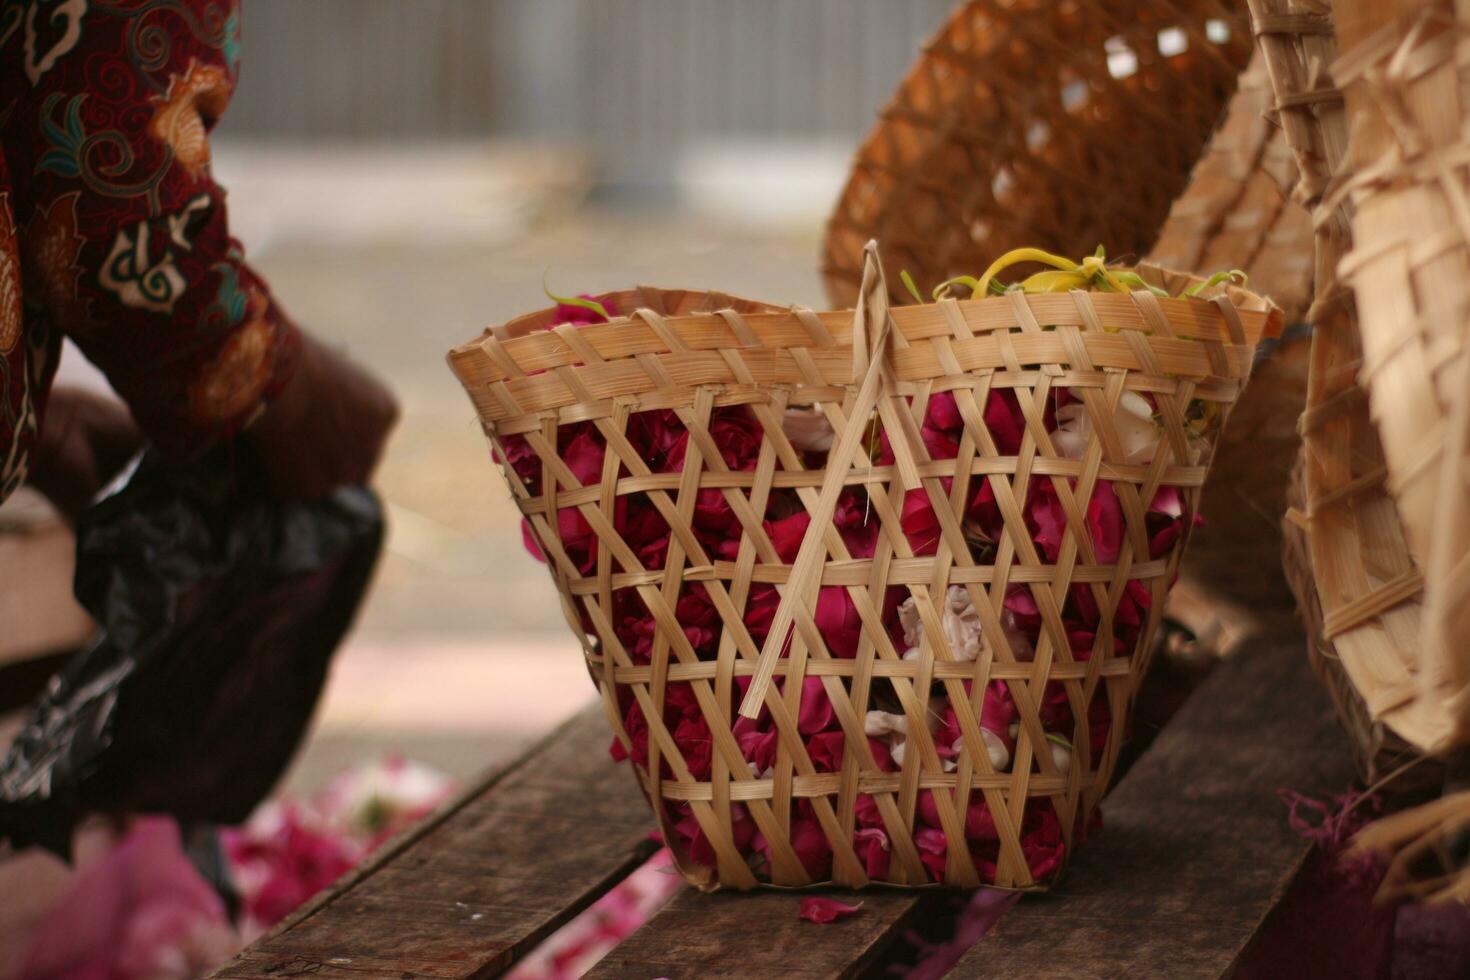 ed rosas en de madera cestas son vendido en el borde del camino. foto